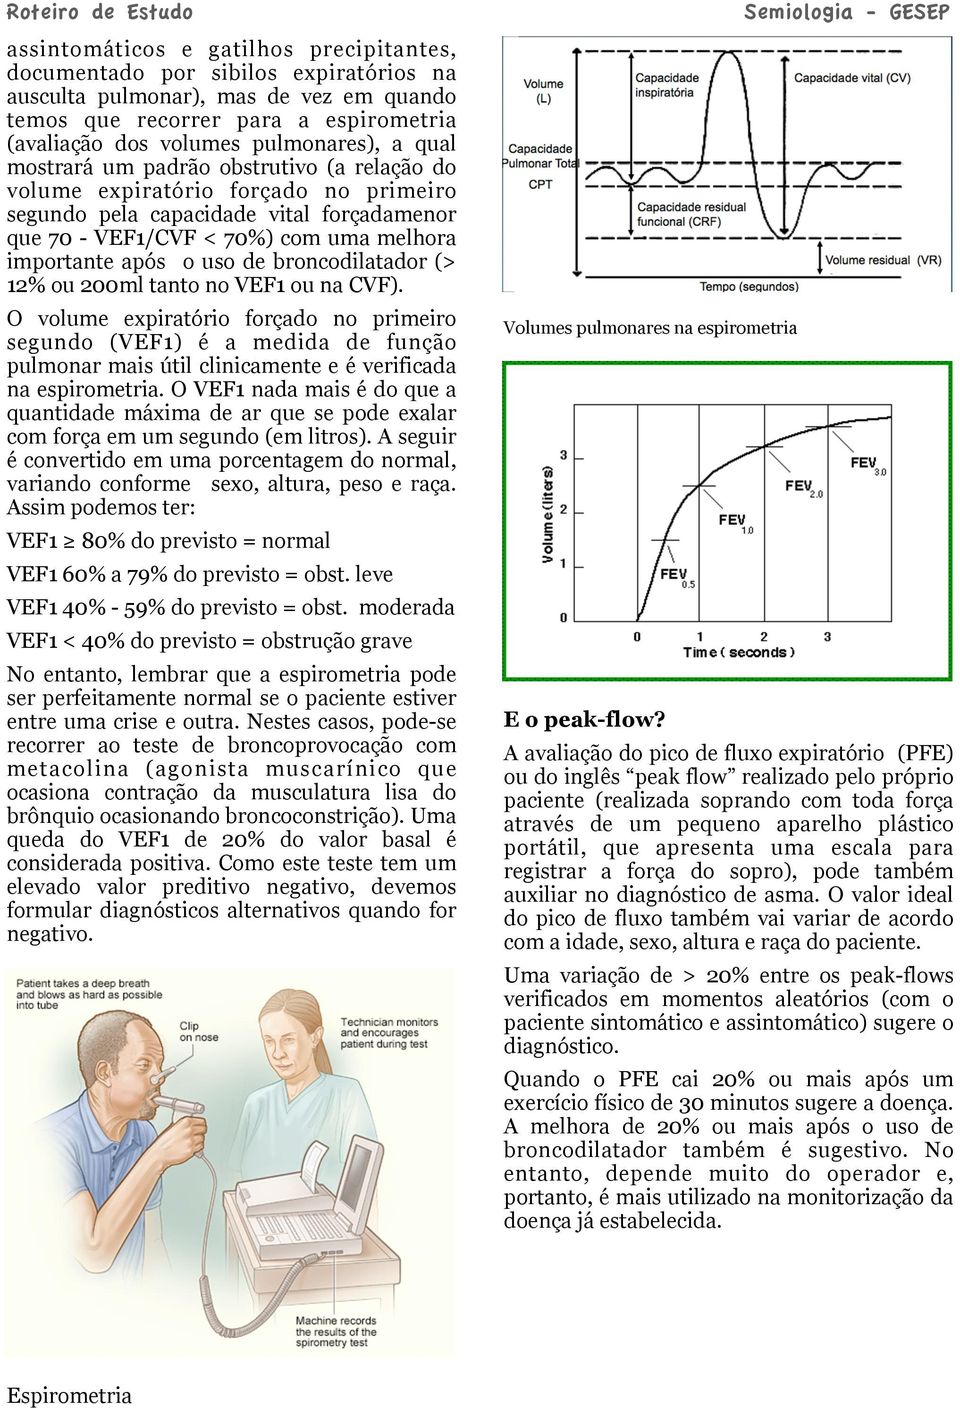 broncodilatador (> 12% ou 200ml tanto no VEF1 ou na CVF). O volume expiratório forçado no primeiro segundo (VEF1) é a medida de função pulmonar mais útil clinicamente e é verificada na espirometria.